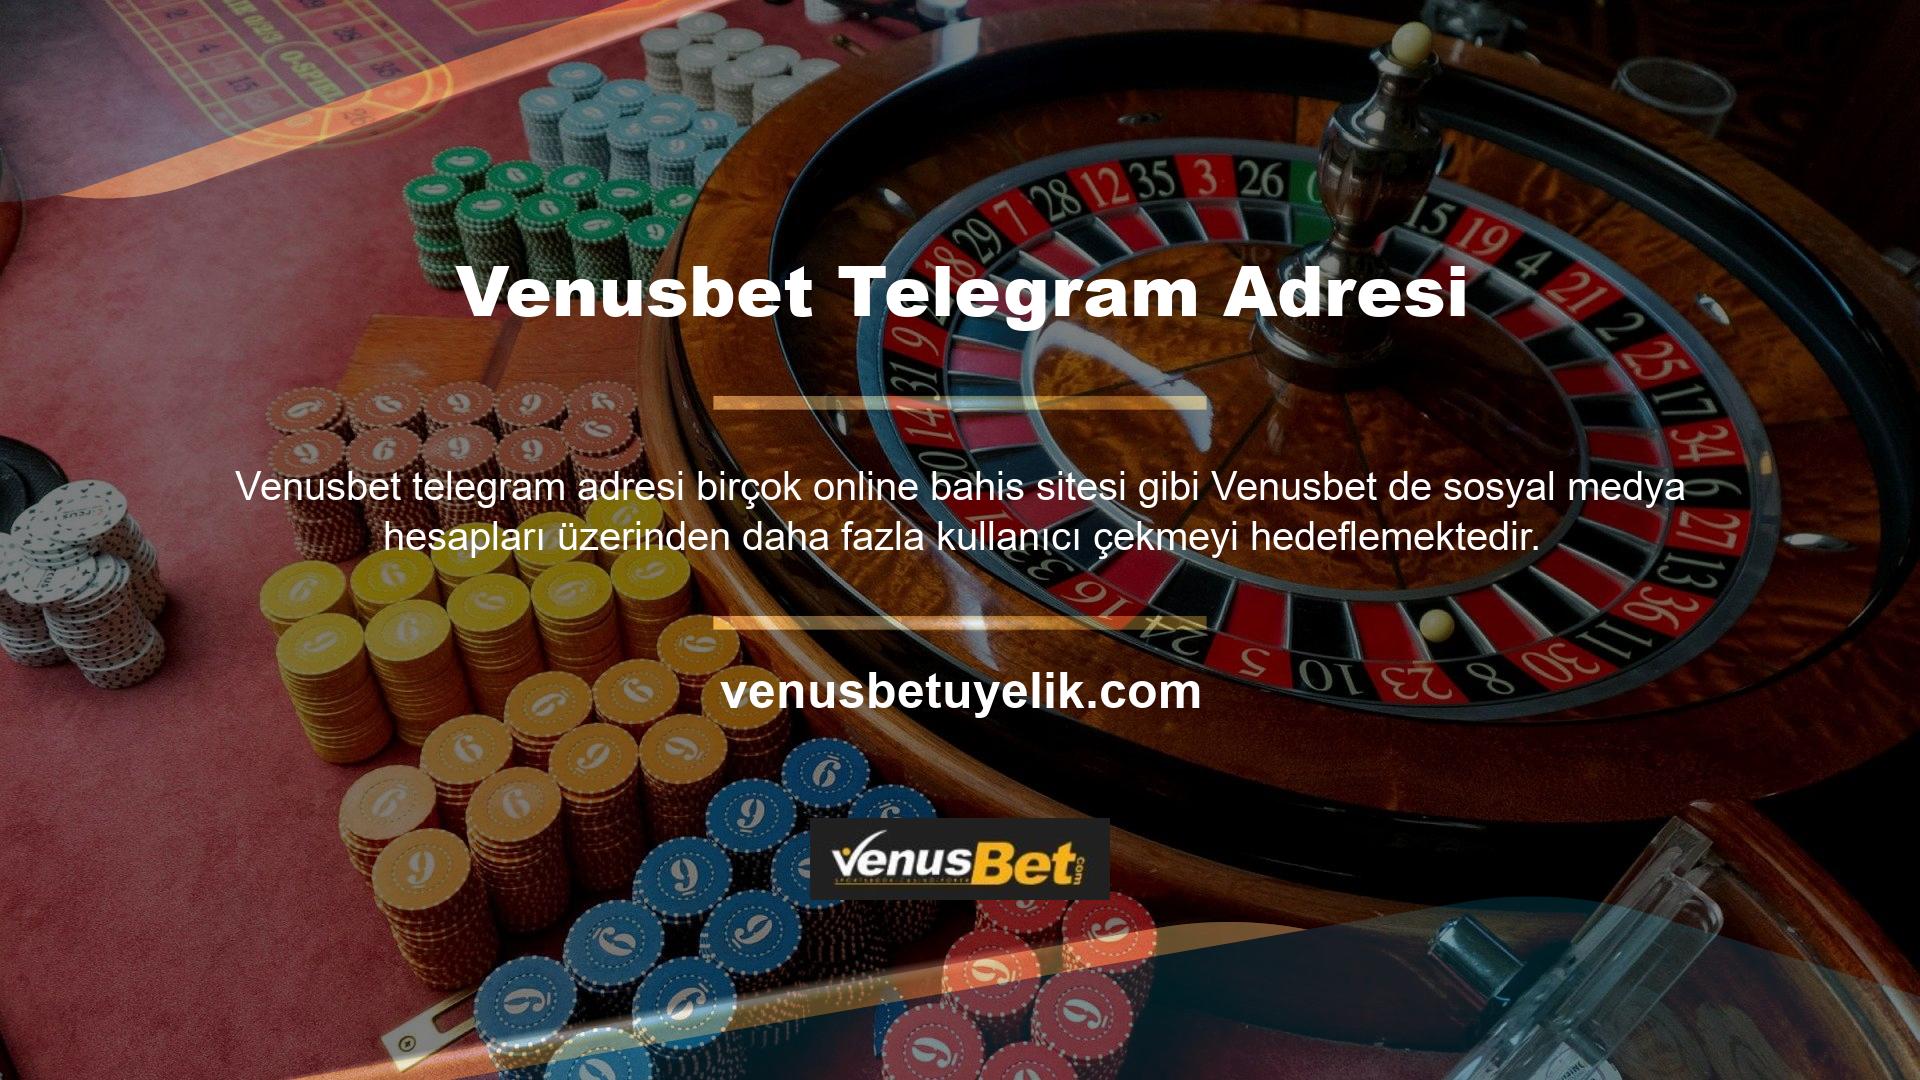 Venusbet Telegram kanalı, Venusbet en çok abone olunan sosyal medya kanallarından biridir